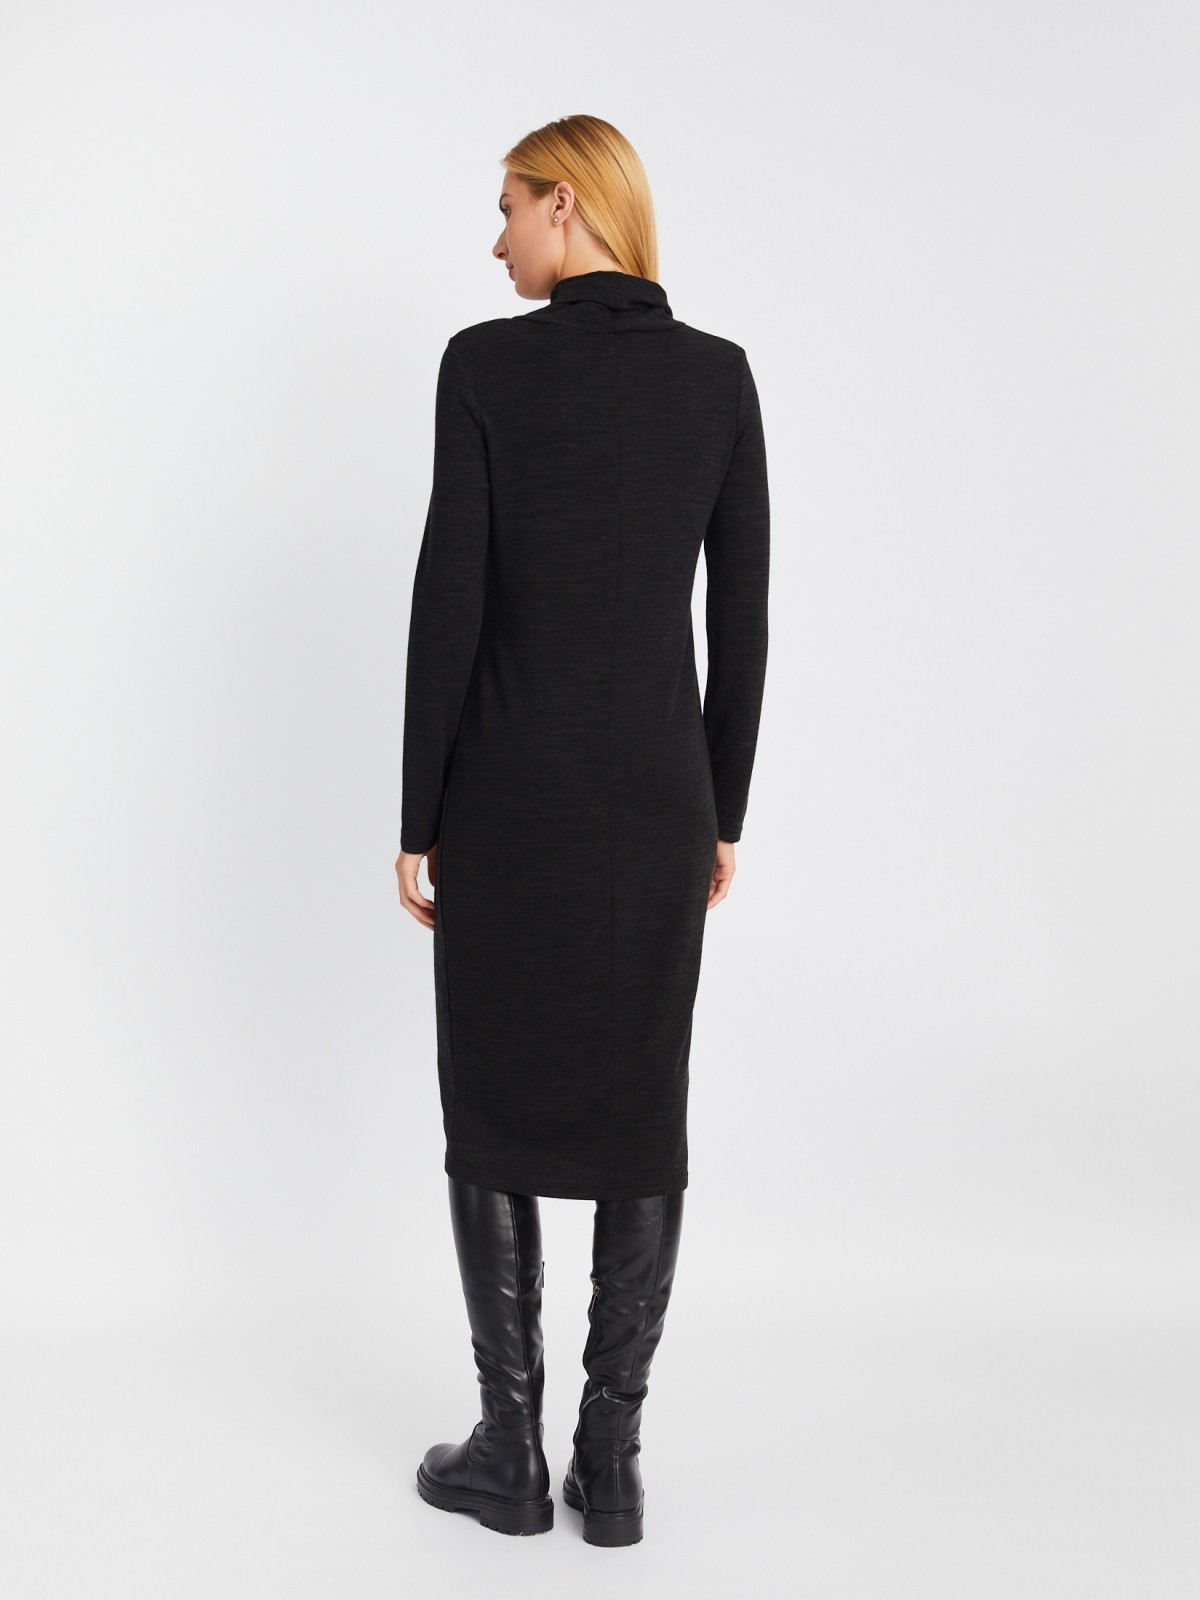 Трикотажное платье-свитер длины миди с высоким горлом zolla 02334819F062, цвет темно-серый, размер XS - фото 6